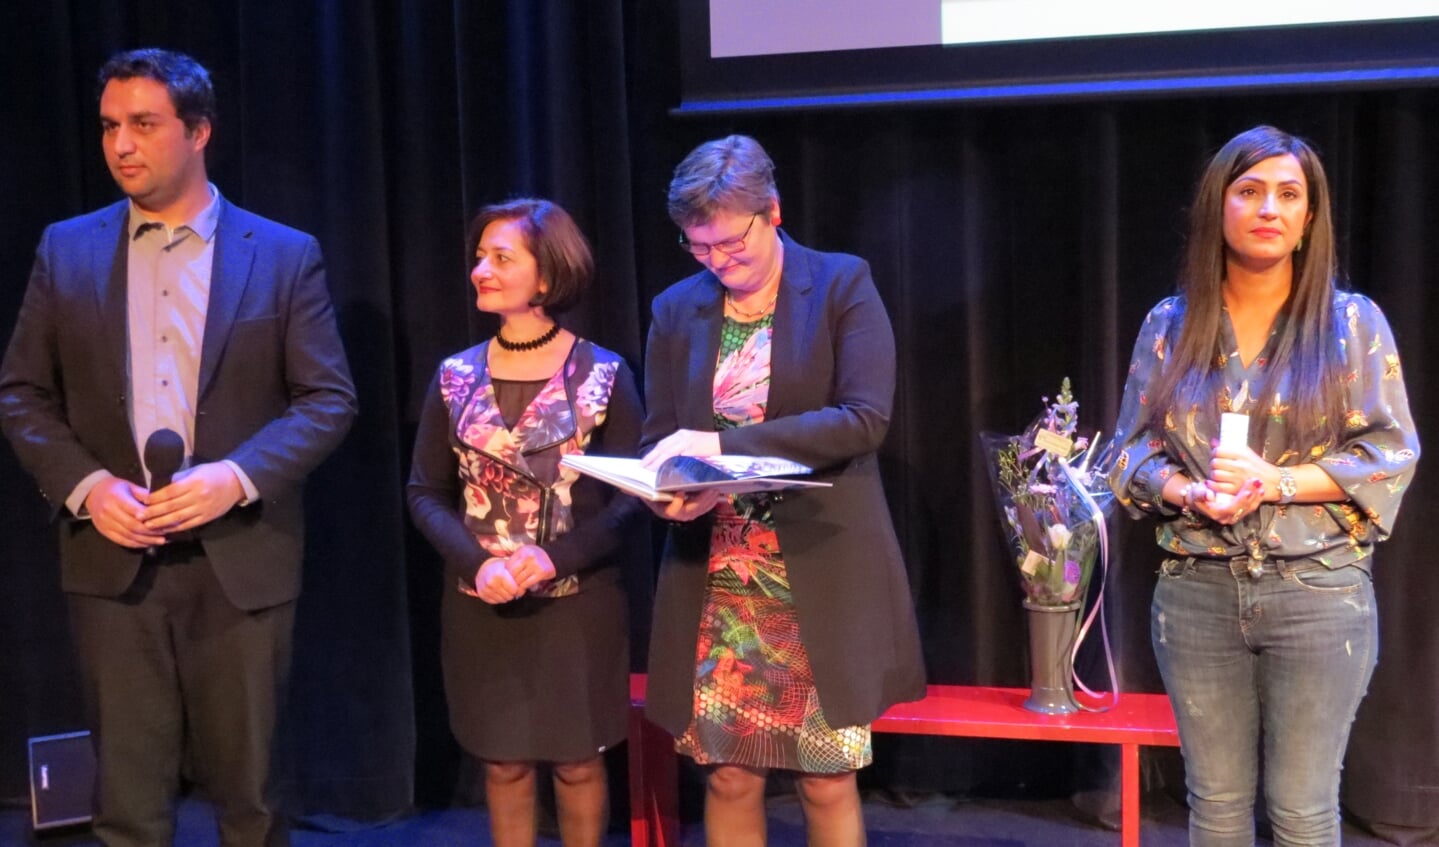 Saber Alizai, Nariné Khenkikian en Parisa Rostami bij de uitreiking van het jubileumboek aan wethouder Anne Brommersma.